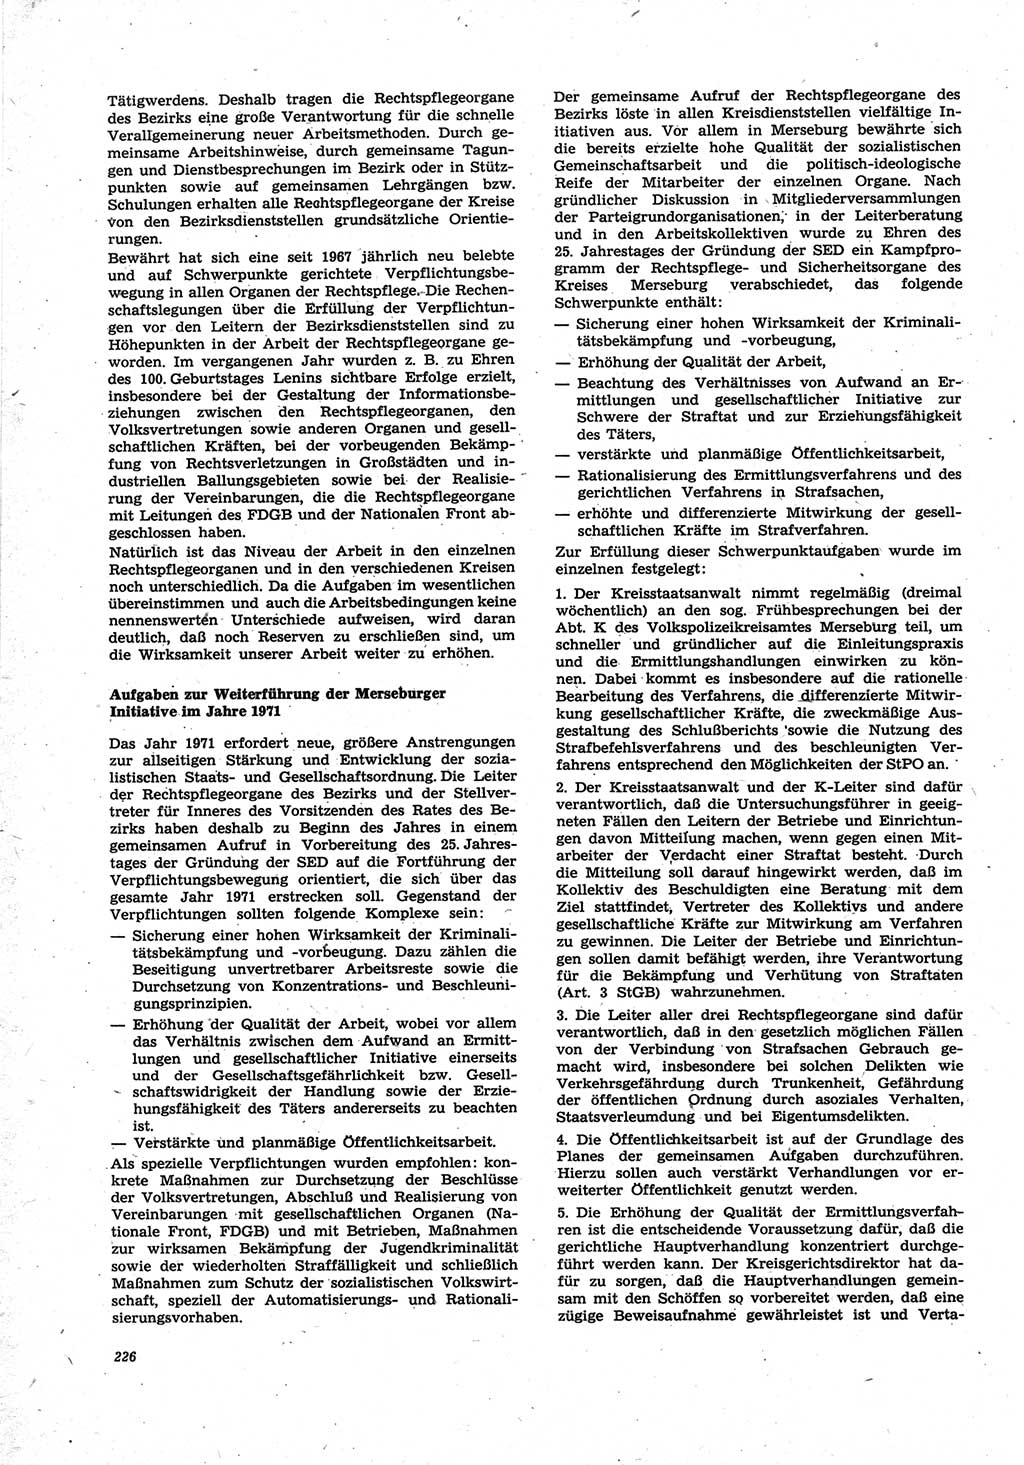 Neue Justiz (NJ), Zeitschrift für Recht und Rechtswissenschaft [Deutsche Demokratische Republik (DDR)], 25. Jahrgang 1971, Seite 226 (NJ DDR 1971, S. 226)